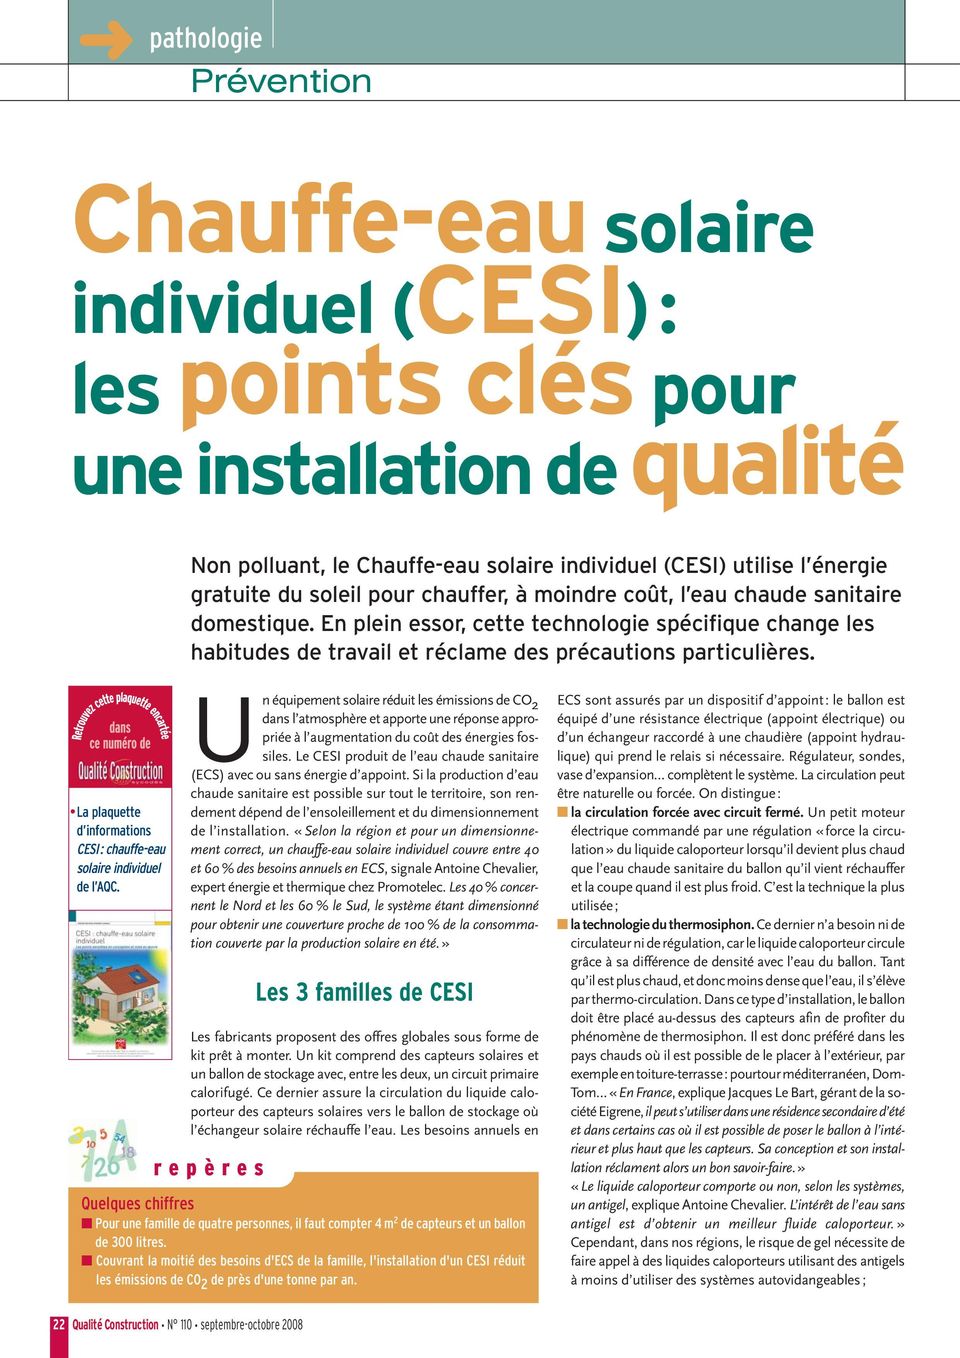 La plaquette d informations CESI: chauffe-eau solaire individuel de l AQC.